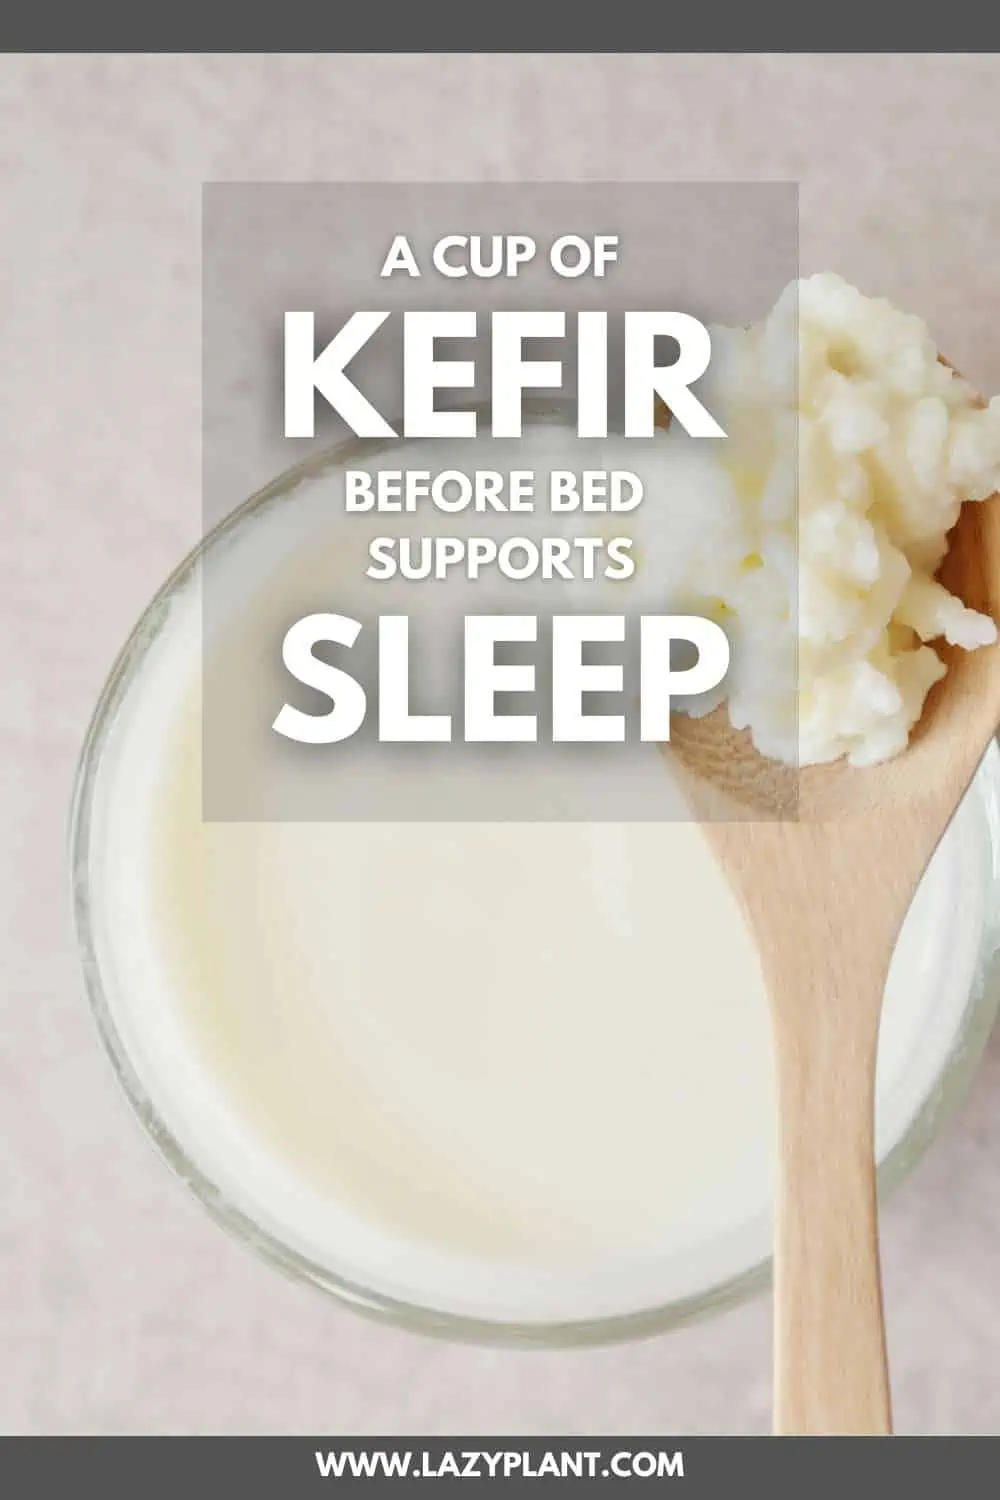 Why does kefir help with sleep?